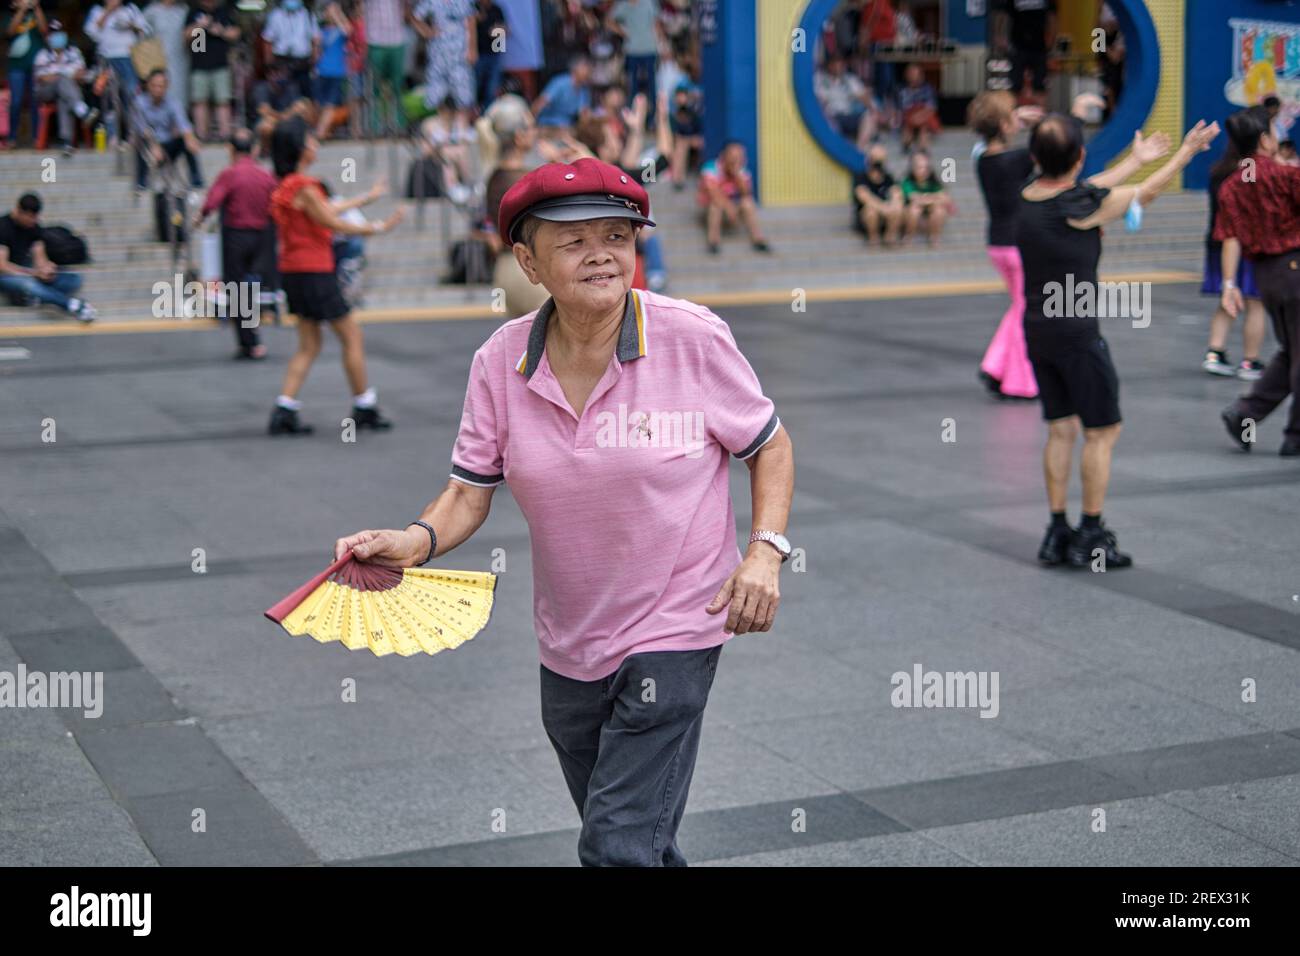 Une femme singapourienne senior gardant la forme une séance de danse impromptue accompagnée de musique chinoise ; à Kreta Ayer Square, Chinatown, Singapour Banque D'Images